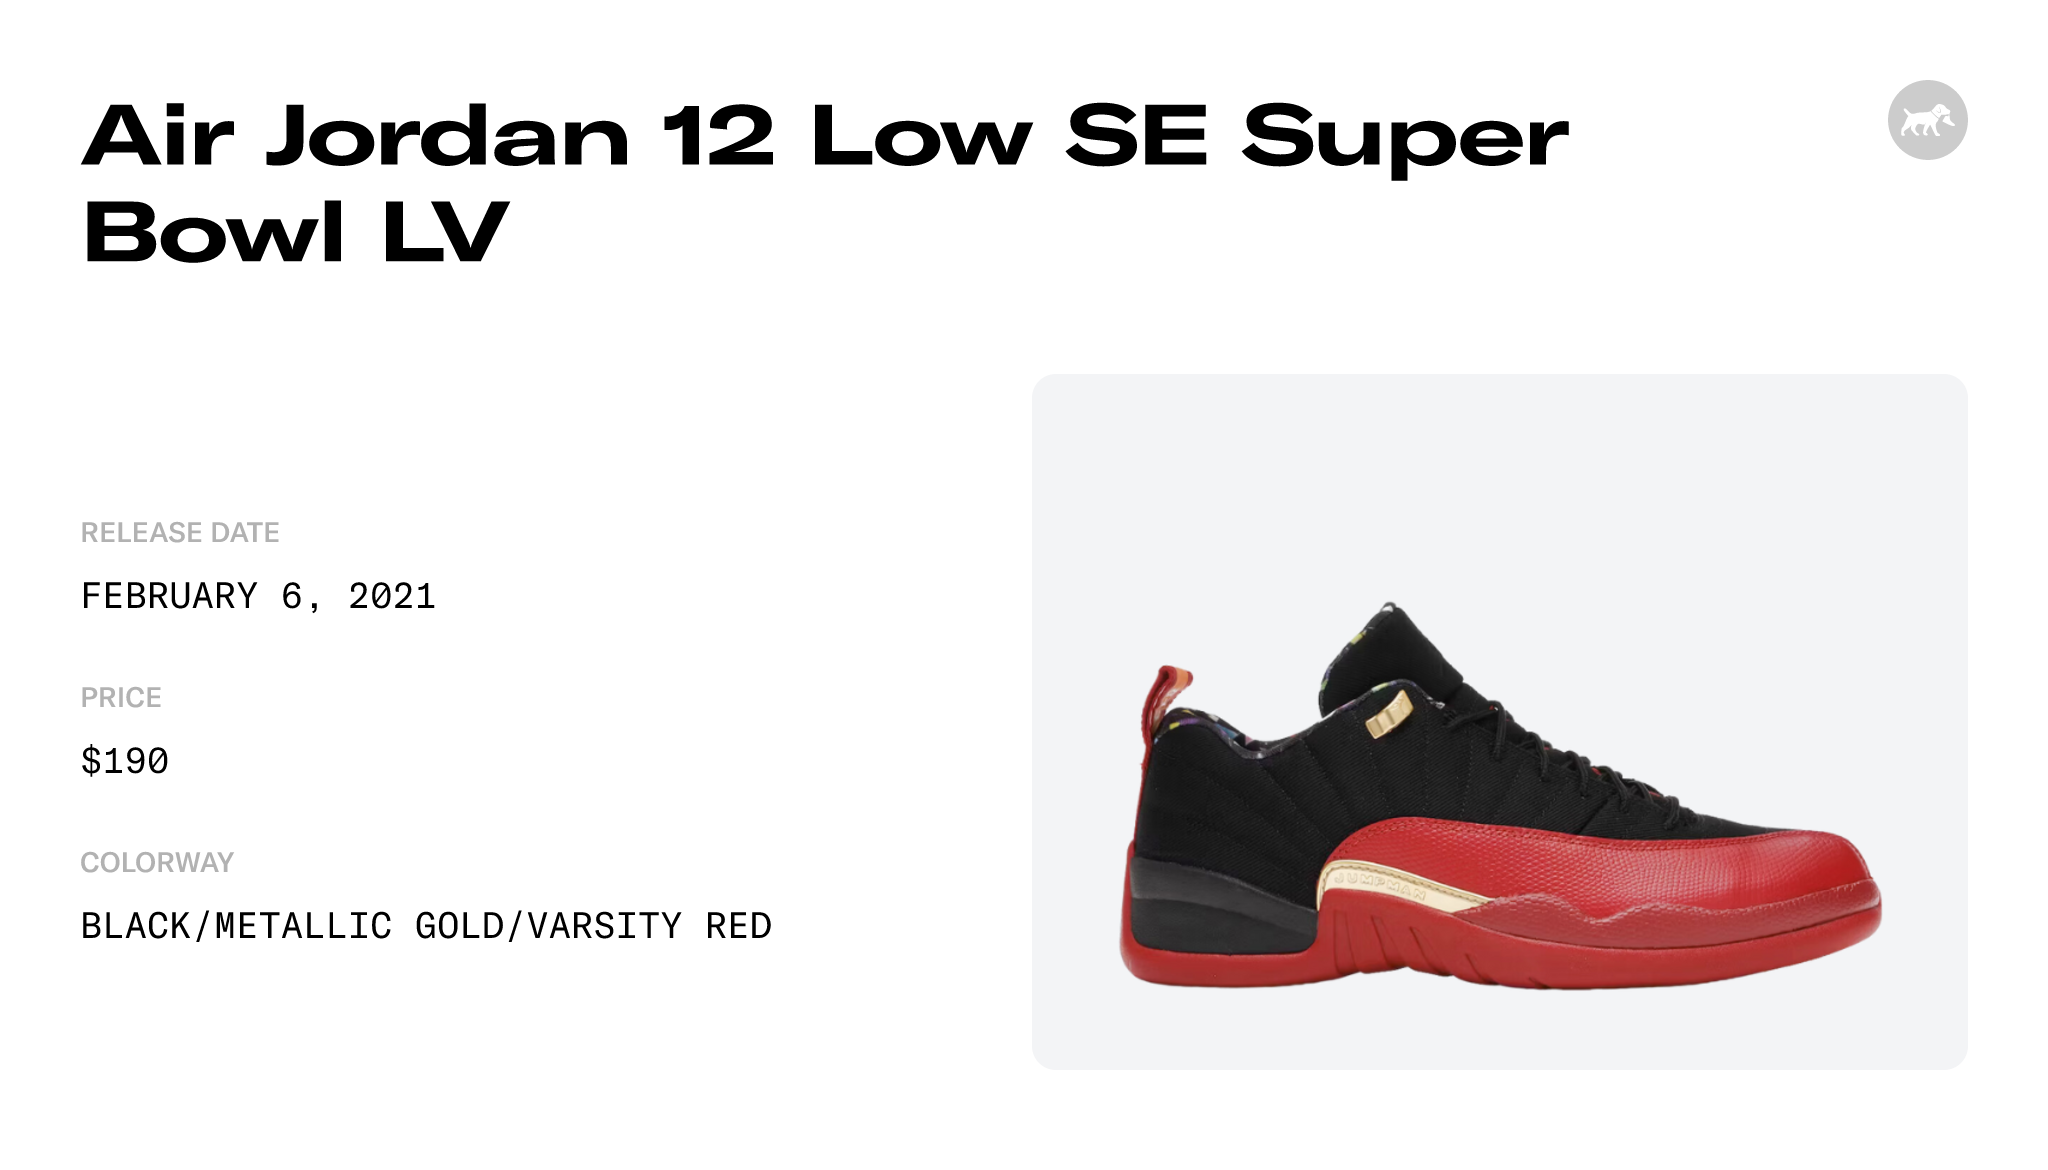 Where to Buy Air Jordan 12 Low SE Super Bowl LV